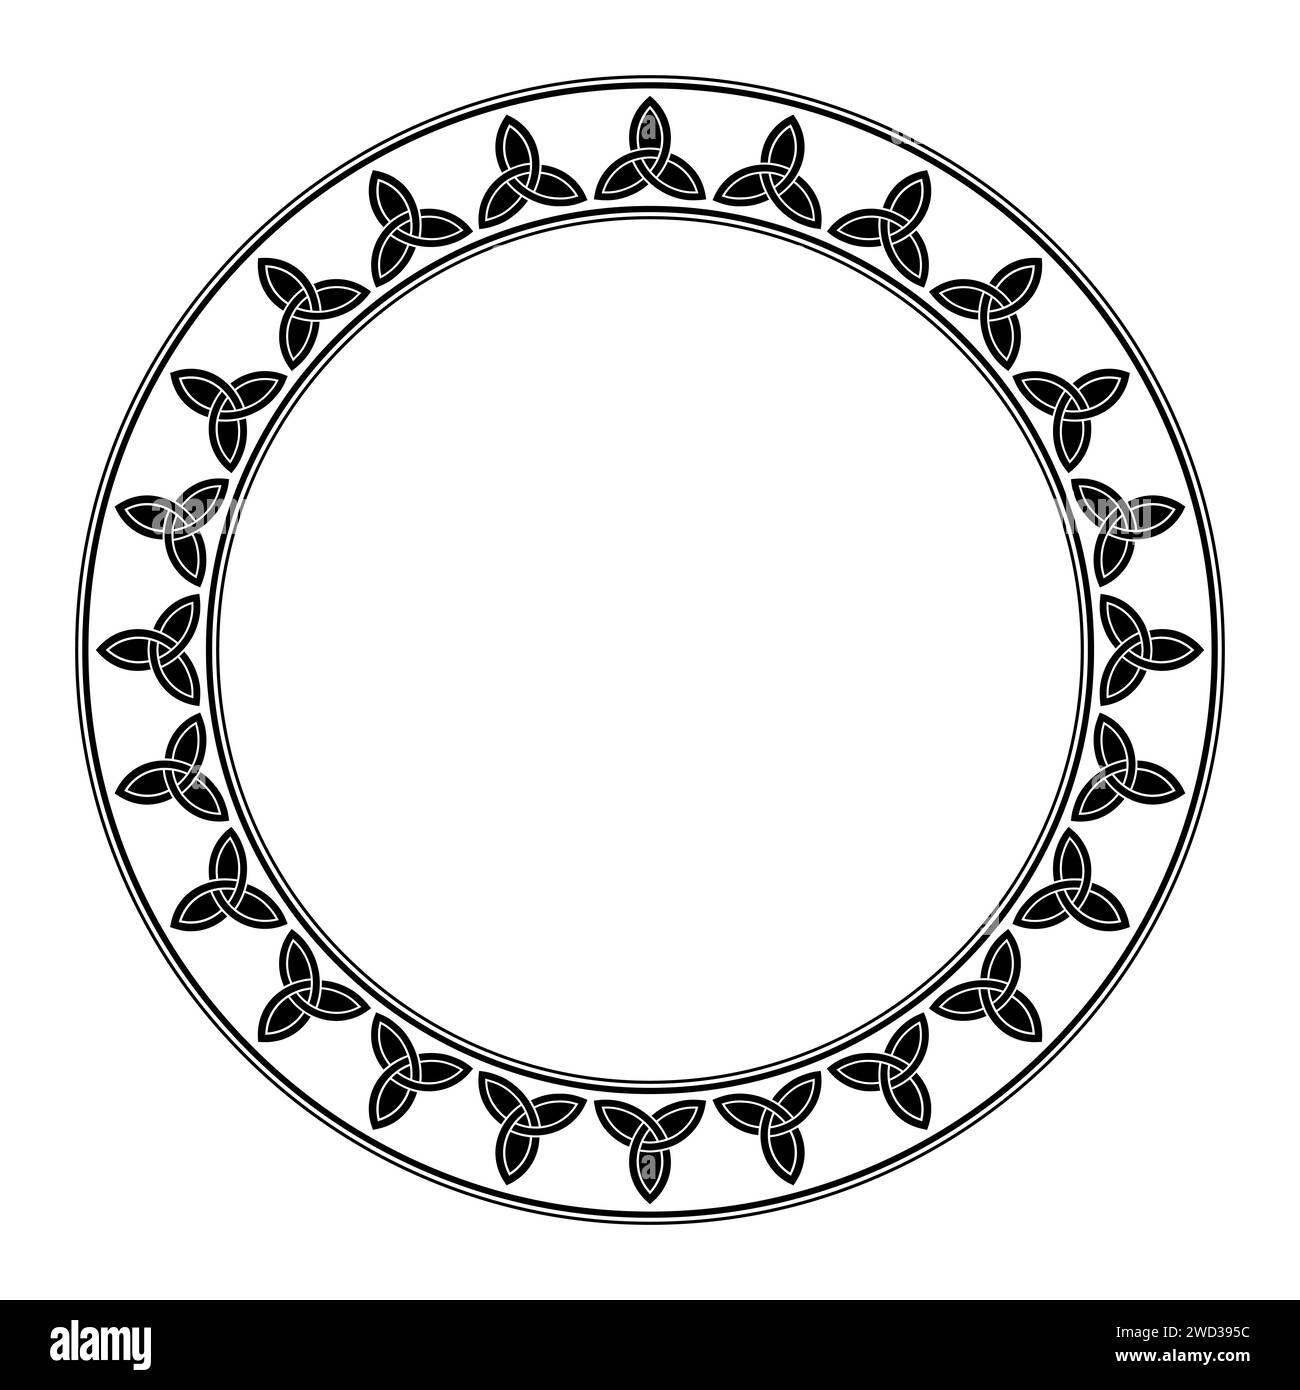 Kreisförmiger Rahmen mit keltischem Triquetra-Muster. Dekorative Grenze mit dem Emblem der Heiligen Dreifaltigkeit, gebildet durch verschlungene Bögen oder Teile von Kreisen. Stockfoto